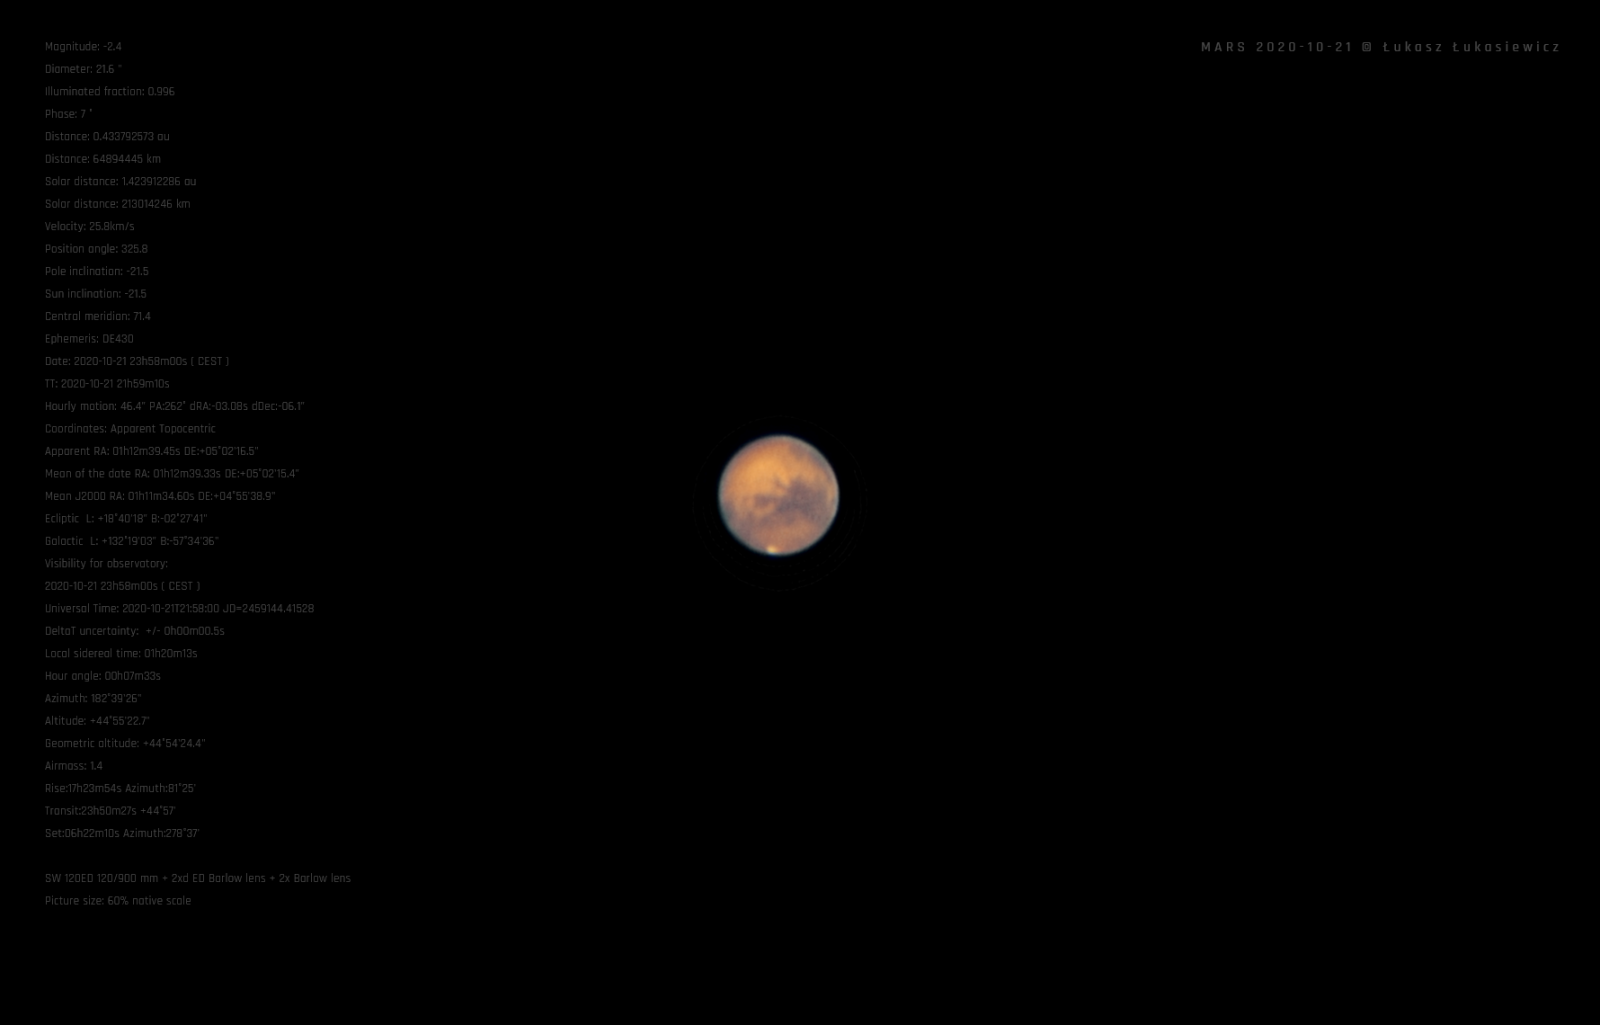 MARS-2020-10-21D.png